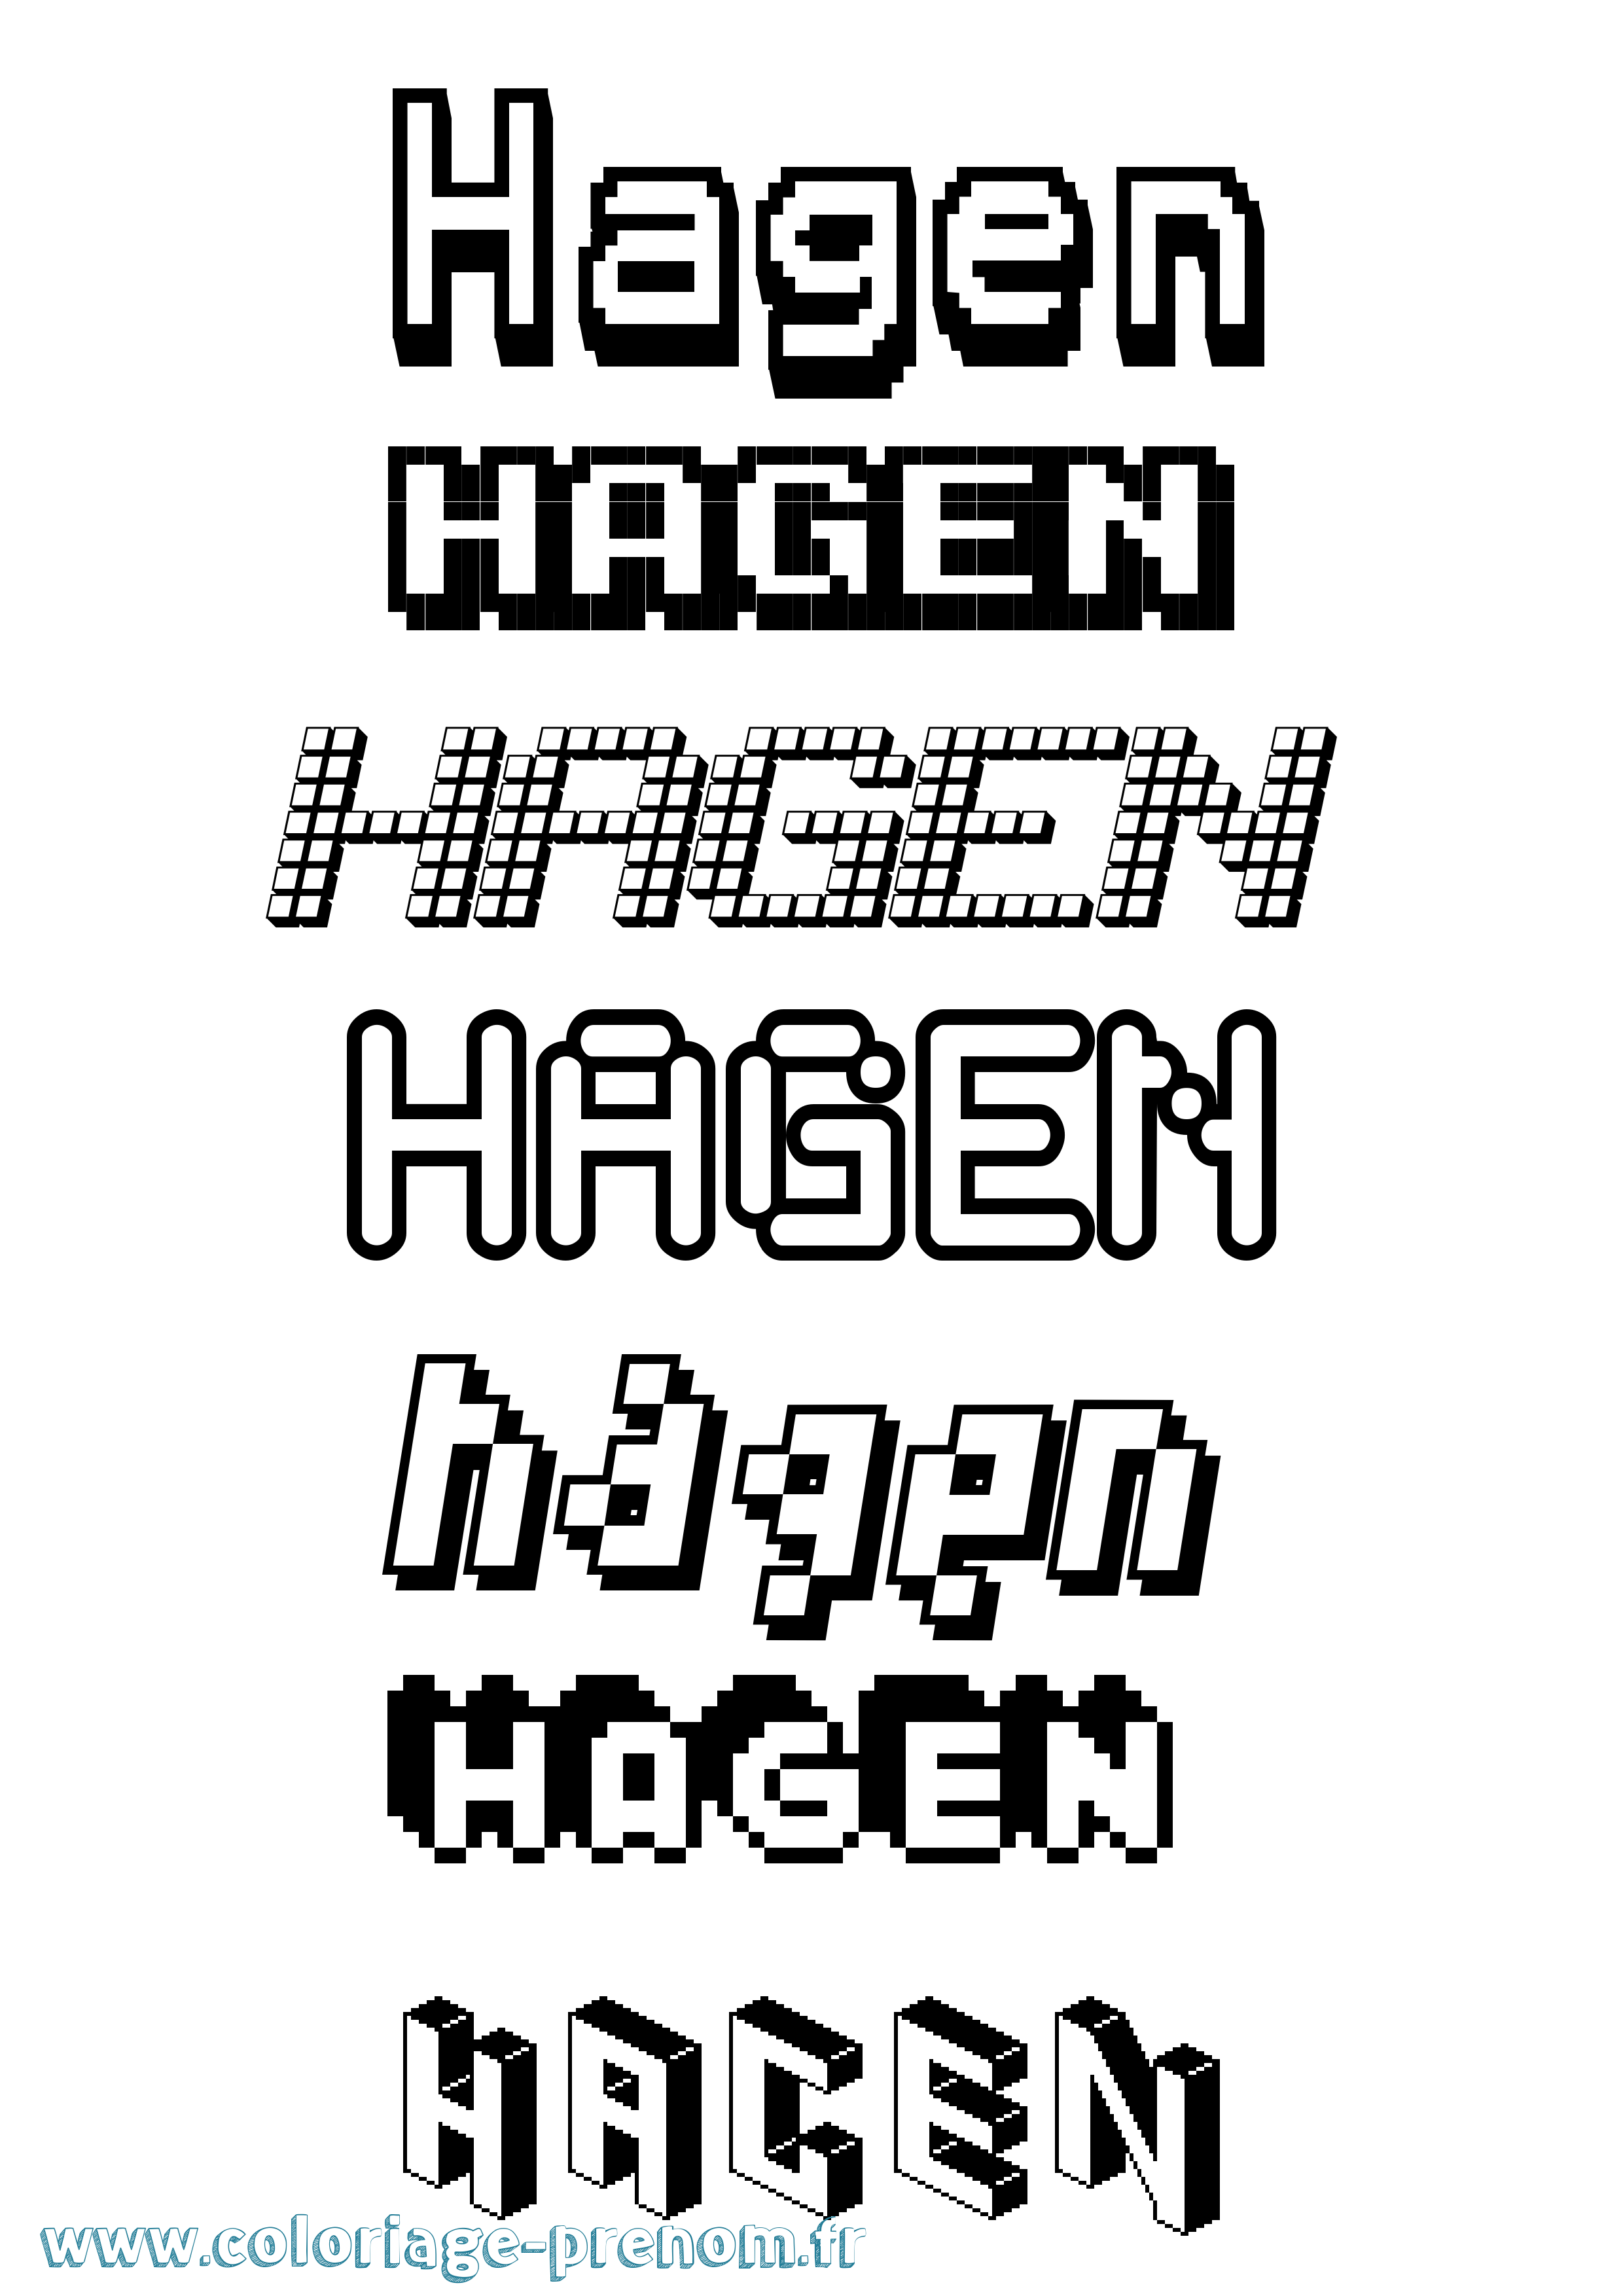 Coloriage prénom Hagen Pixel